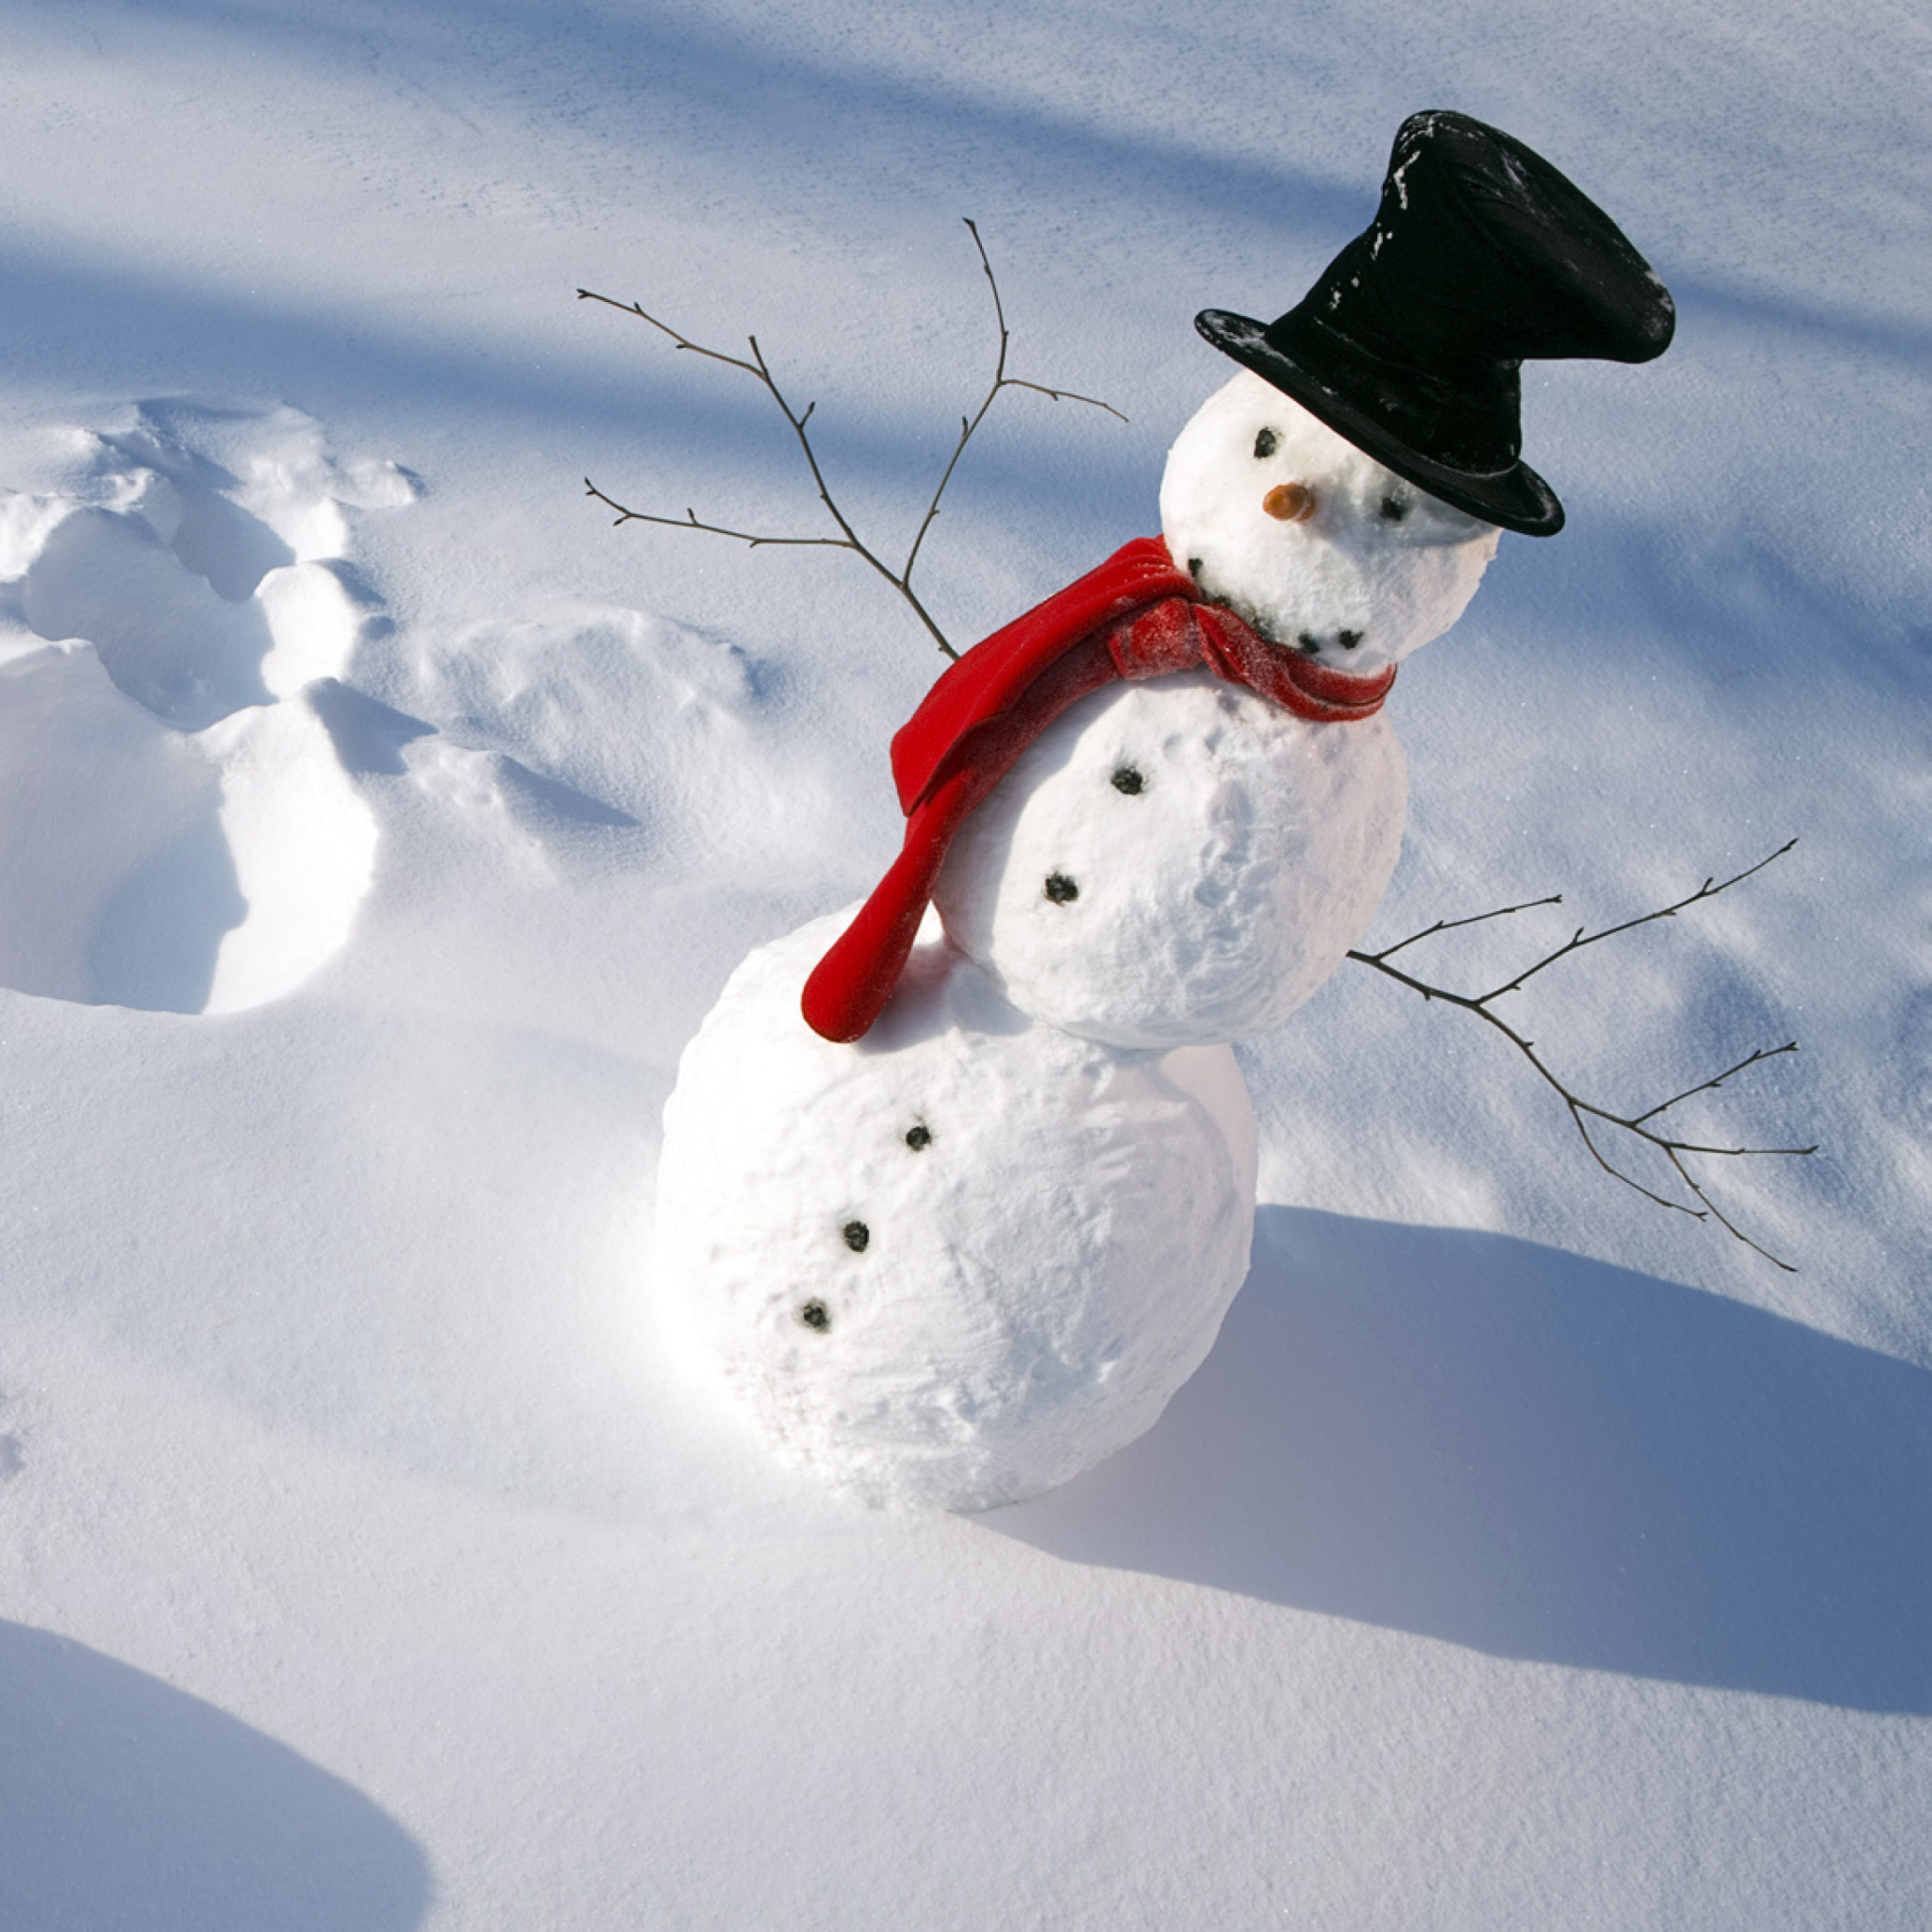 Snowman photoshoot